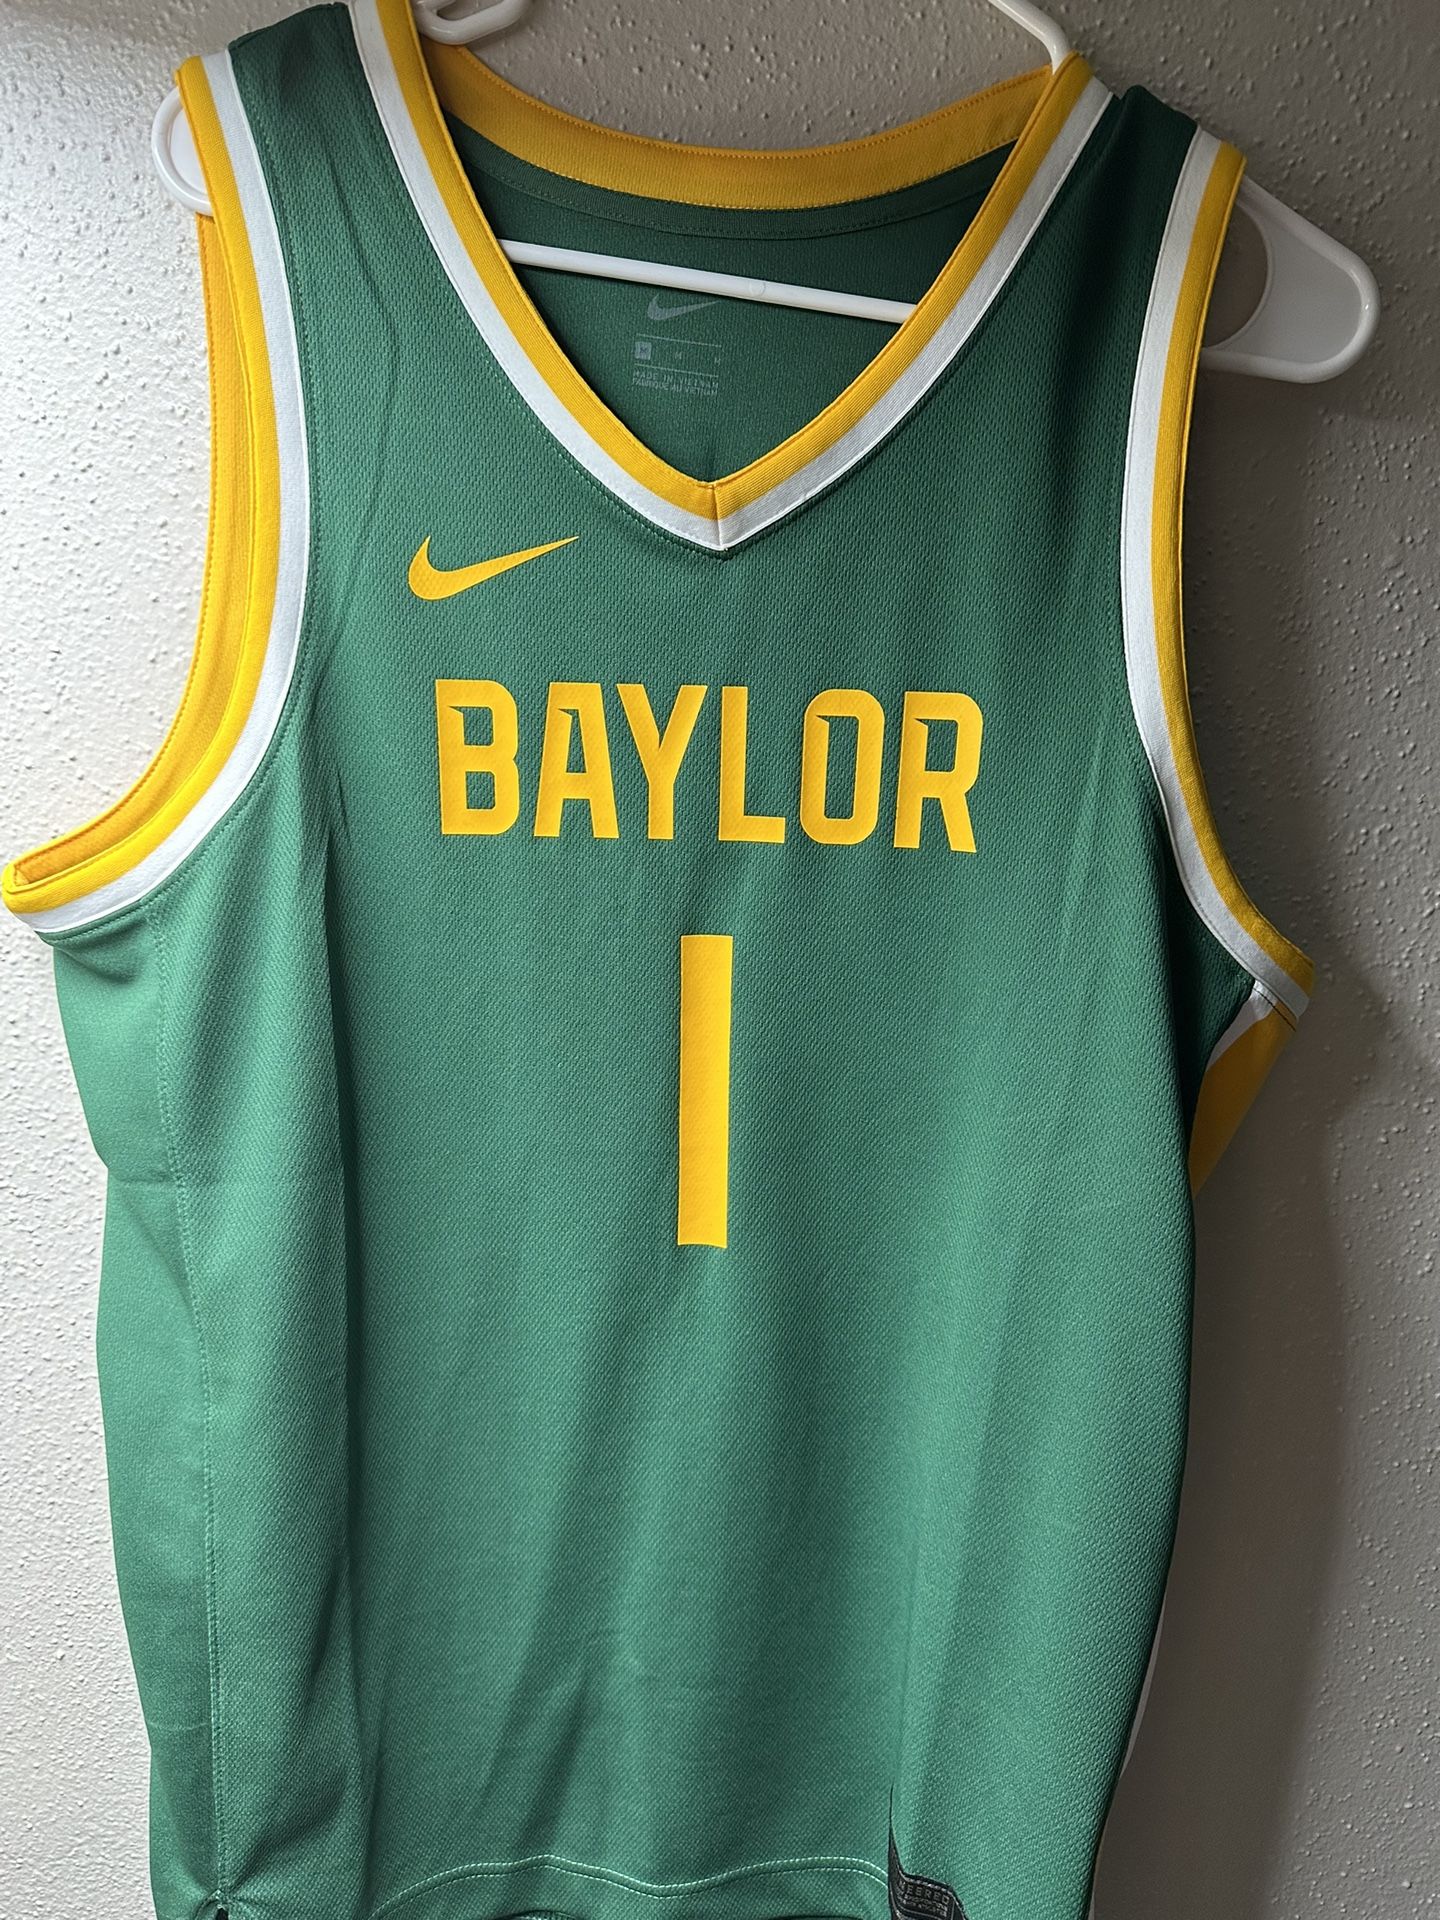 Mens Nike Baylor University Bears Basketball Jersey Size M